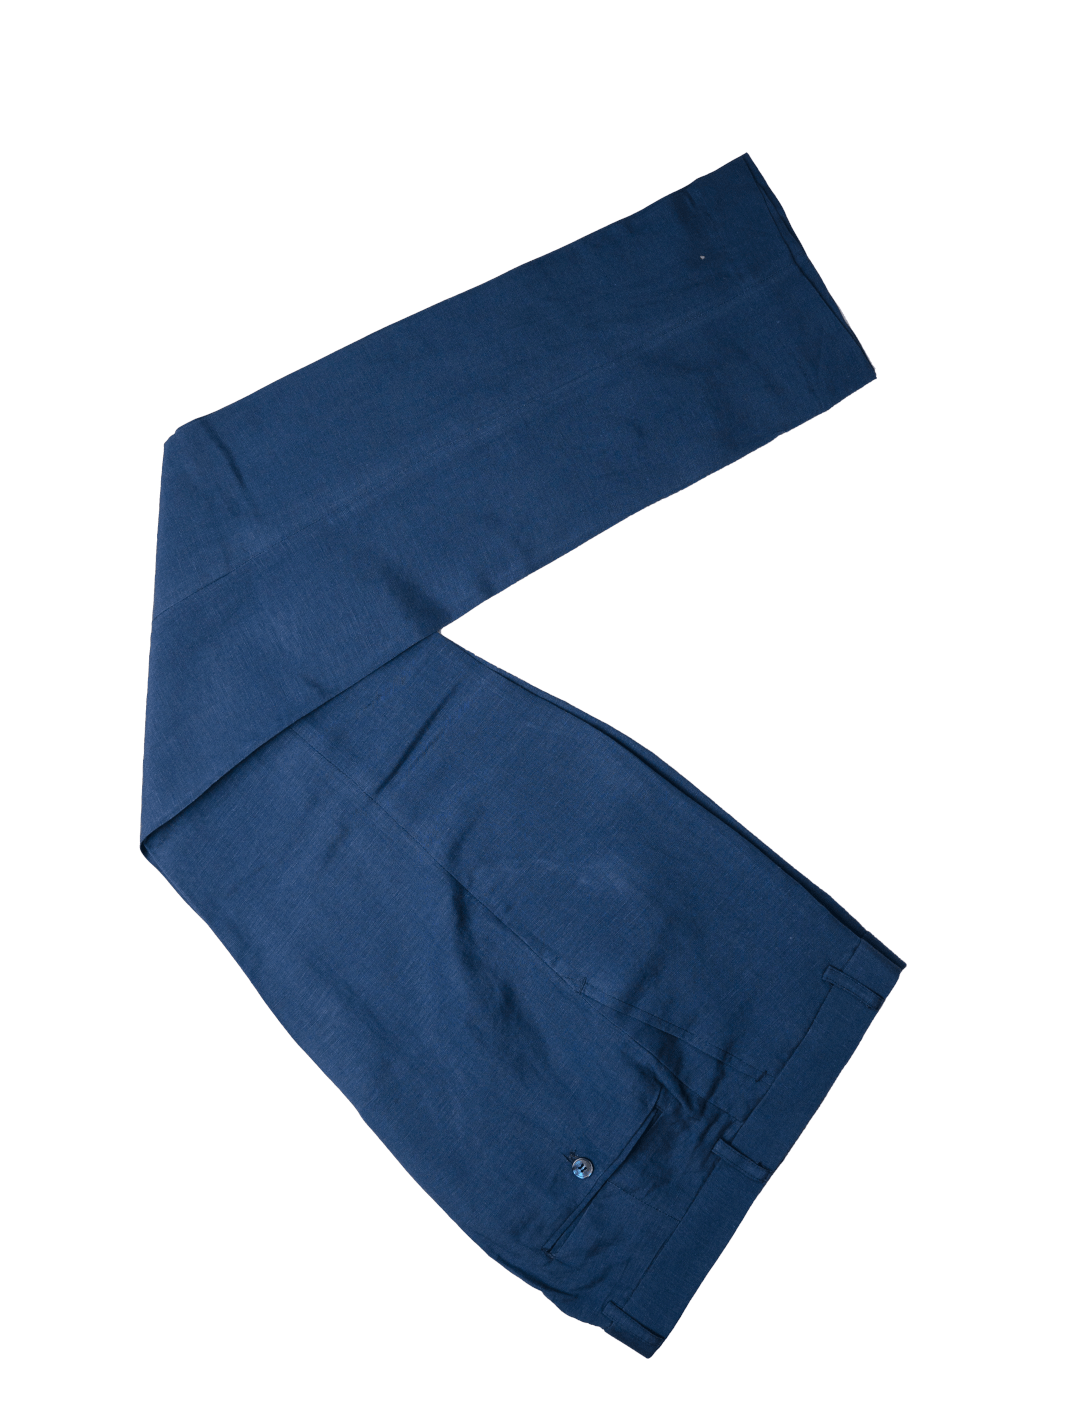 Blue Linen 3 Piece Suit